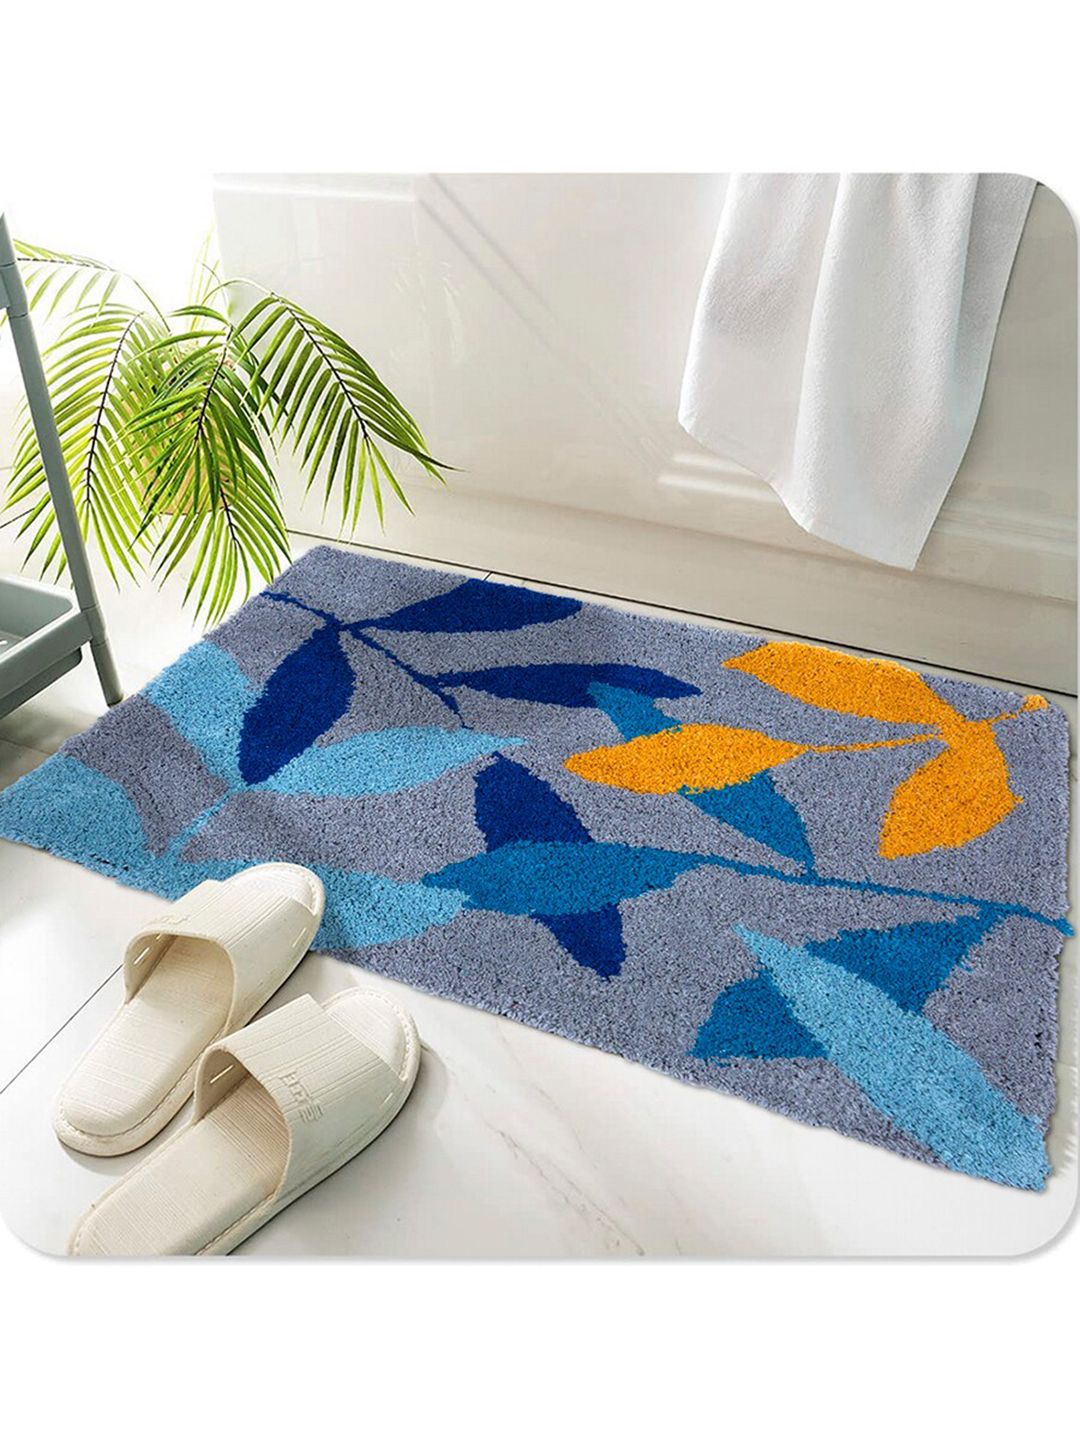 AAZEEM Blue & Orange Self-Design Cotton Anti-Skid Doormats Price in India